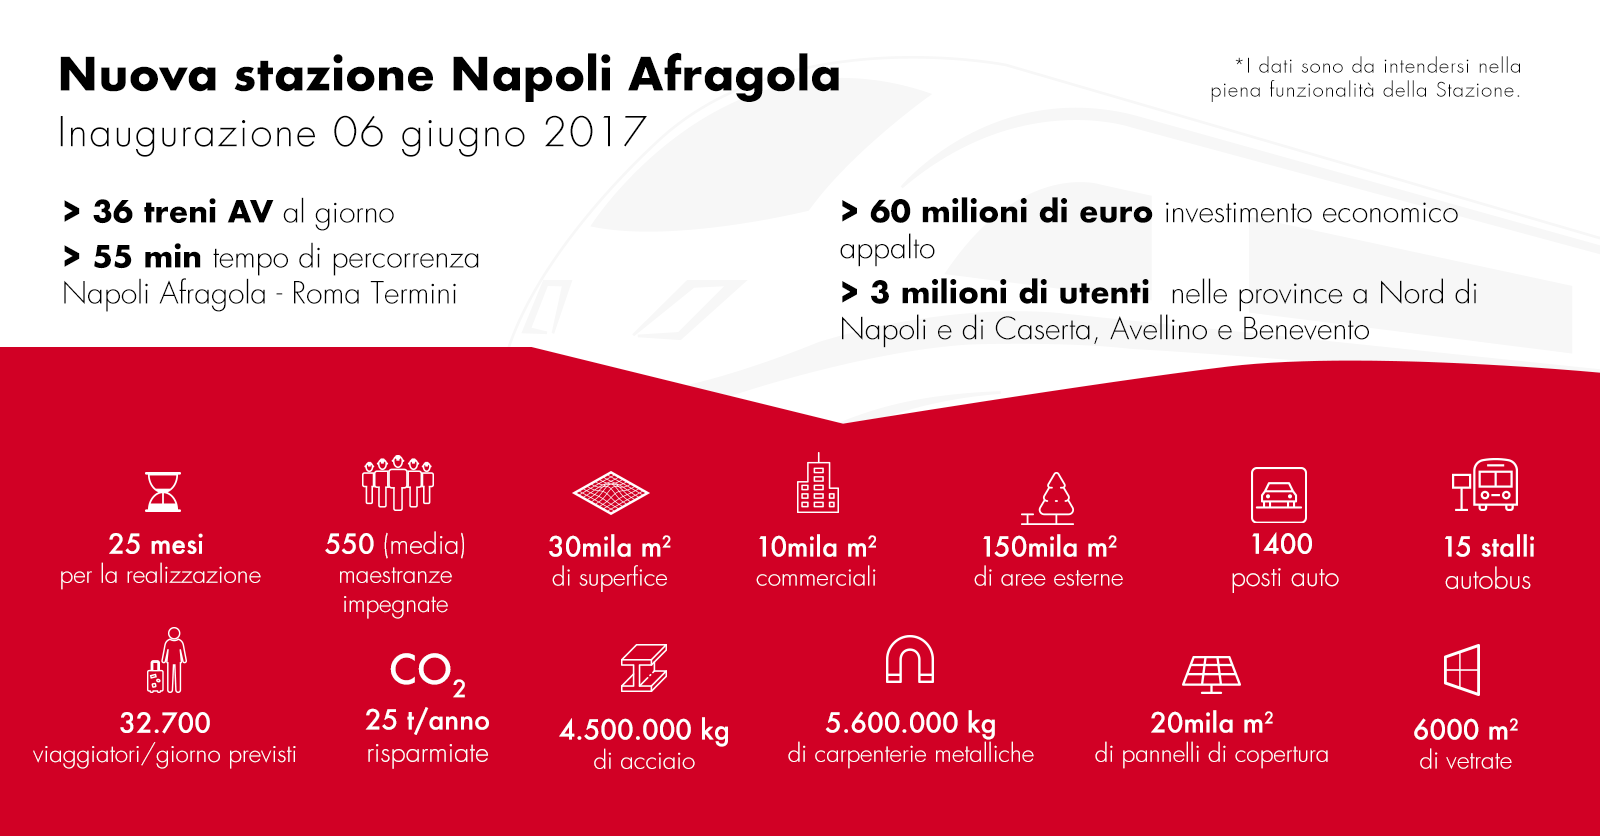 Grafica: infografica sulla stazioni di Napoli Afragola